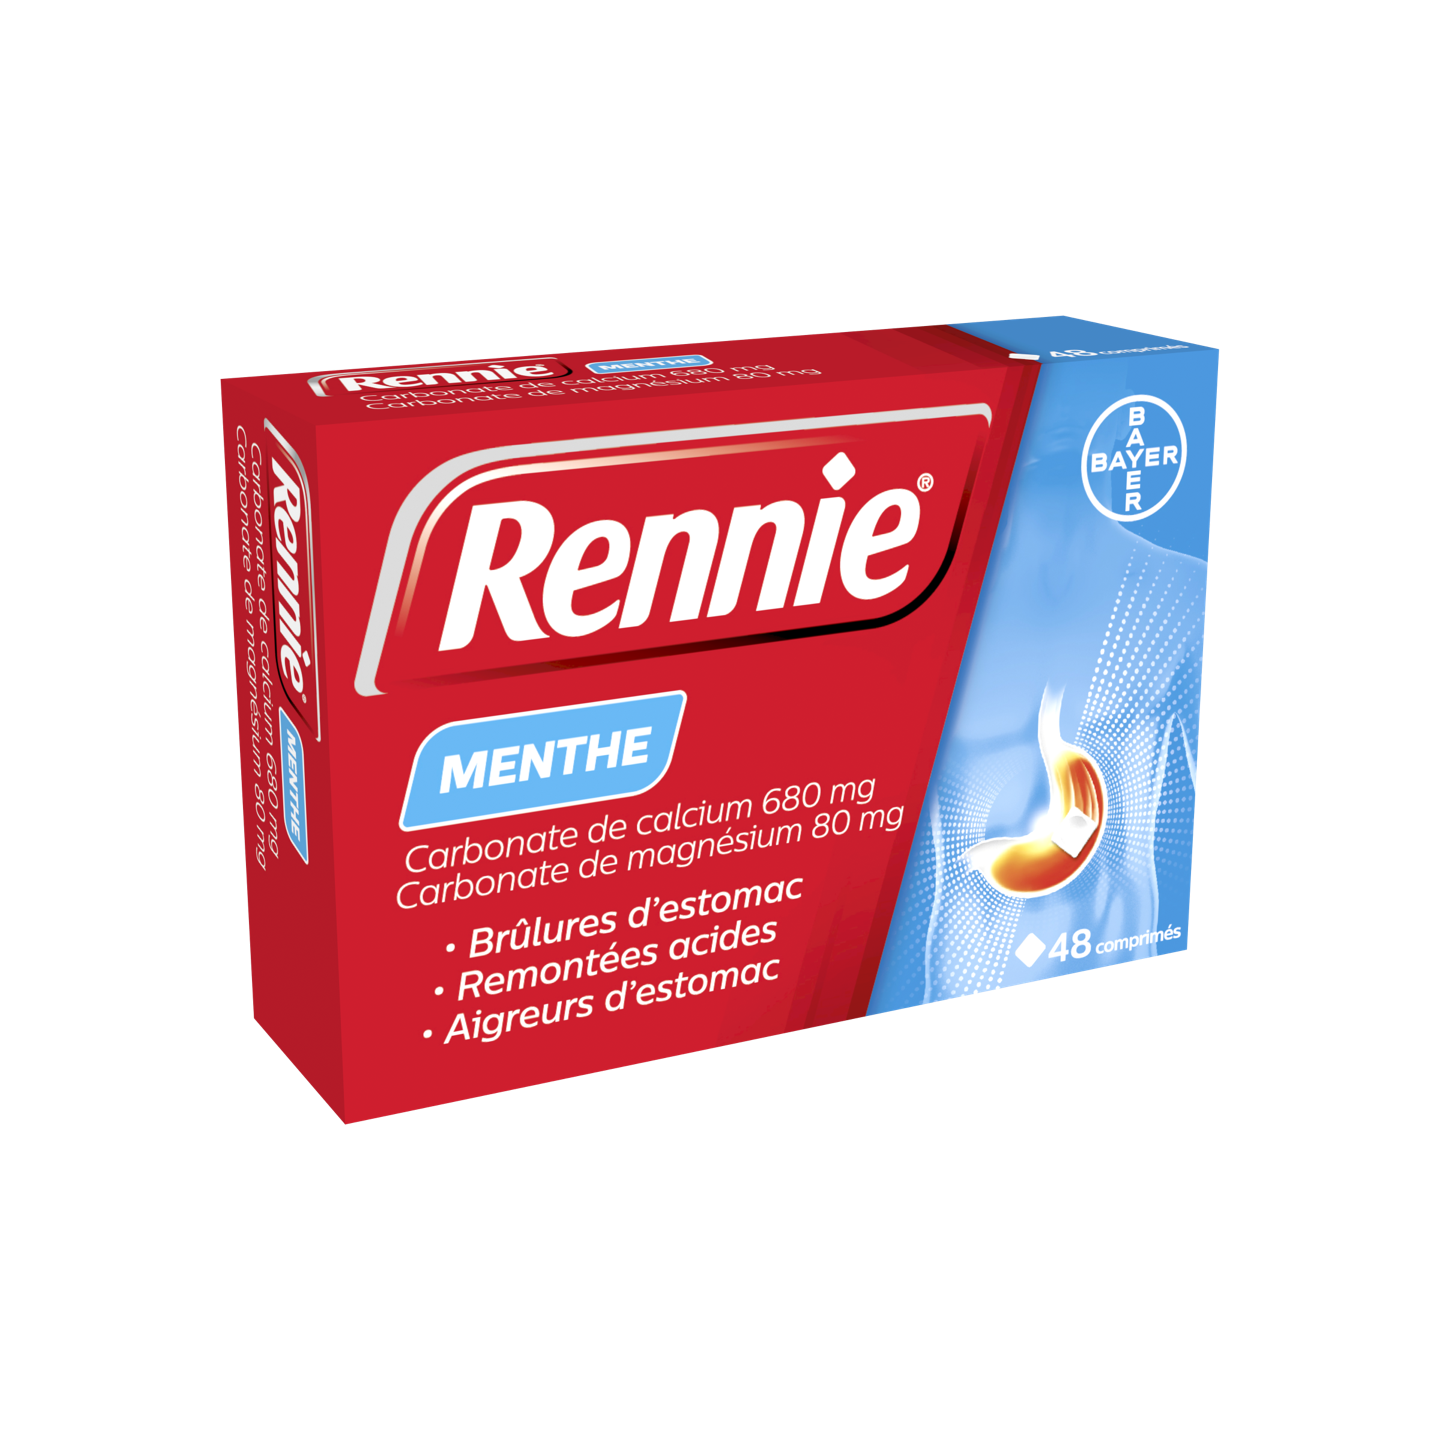 Rennie Menthe